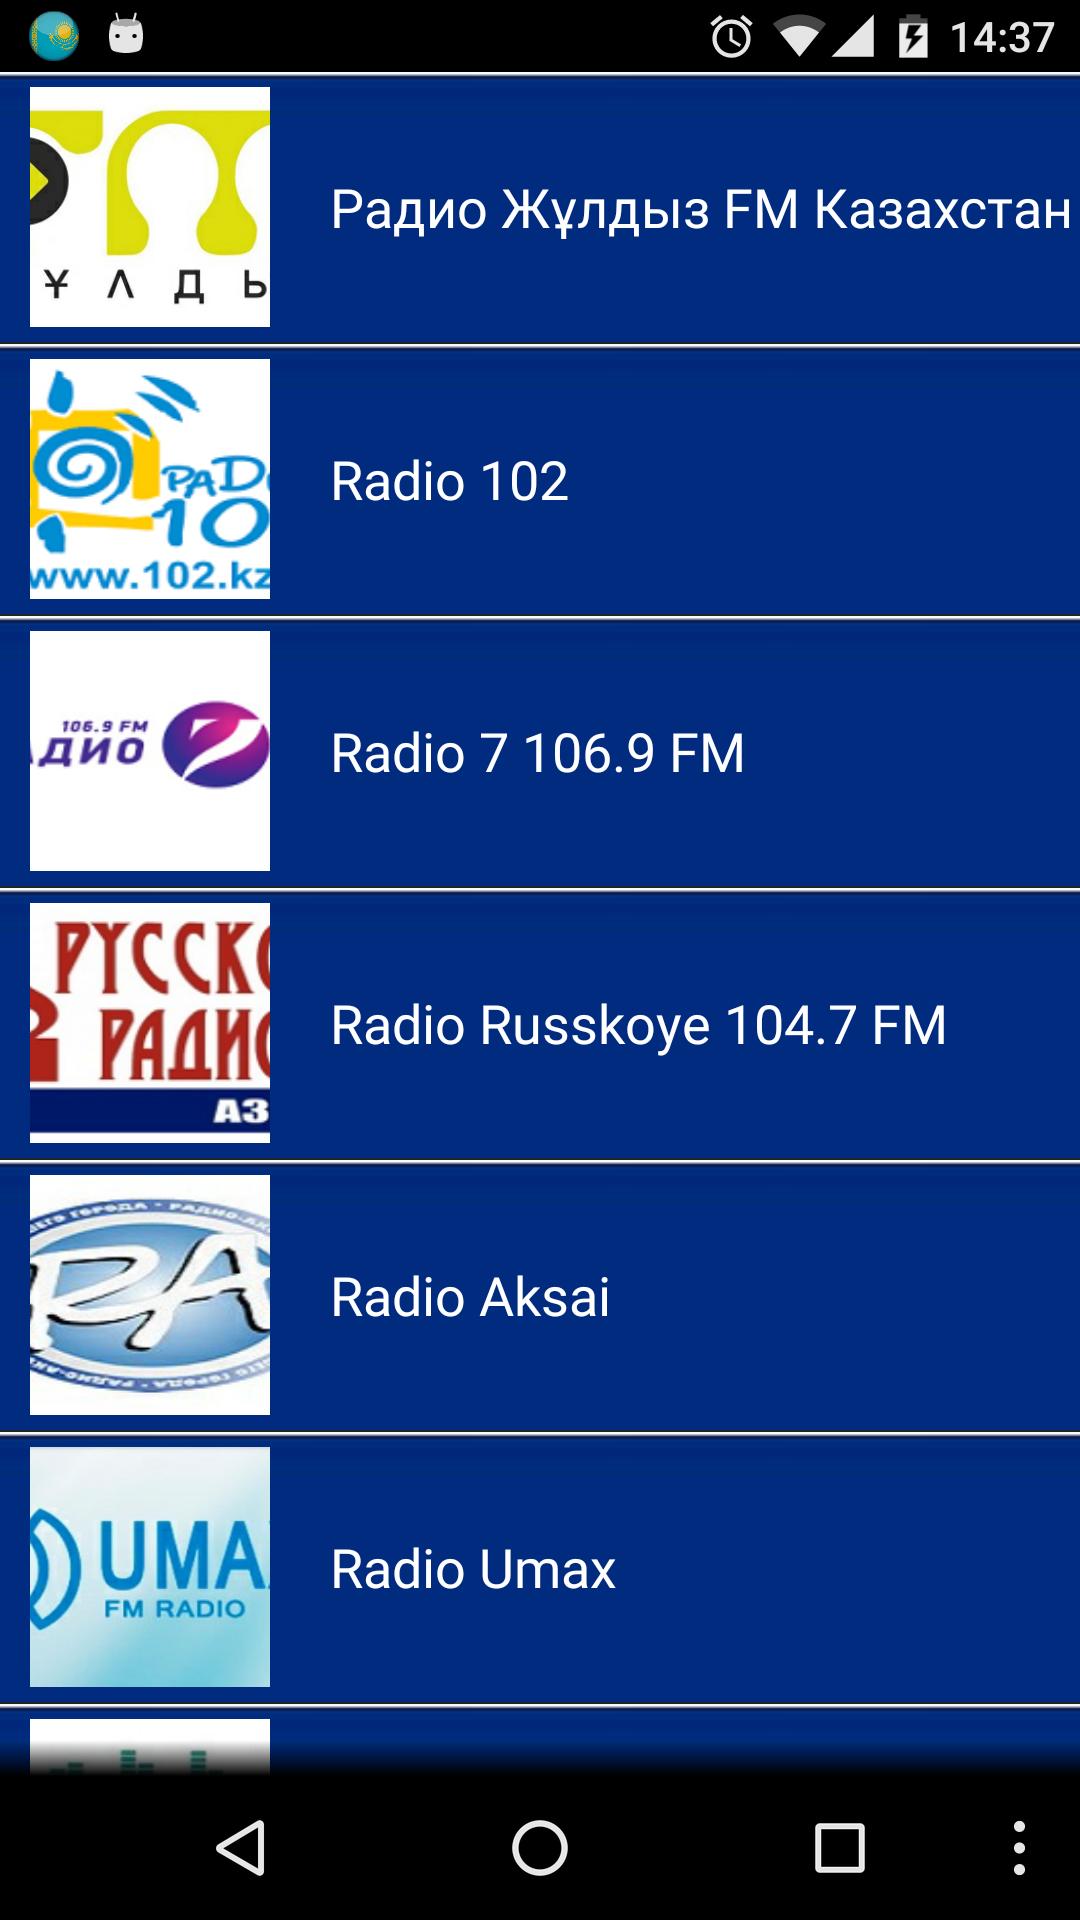 Бесплатное радио казахстан